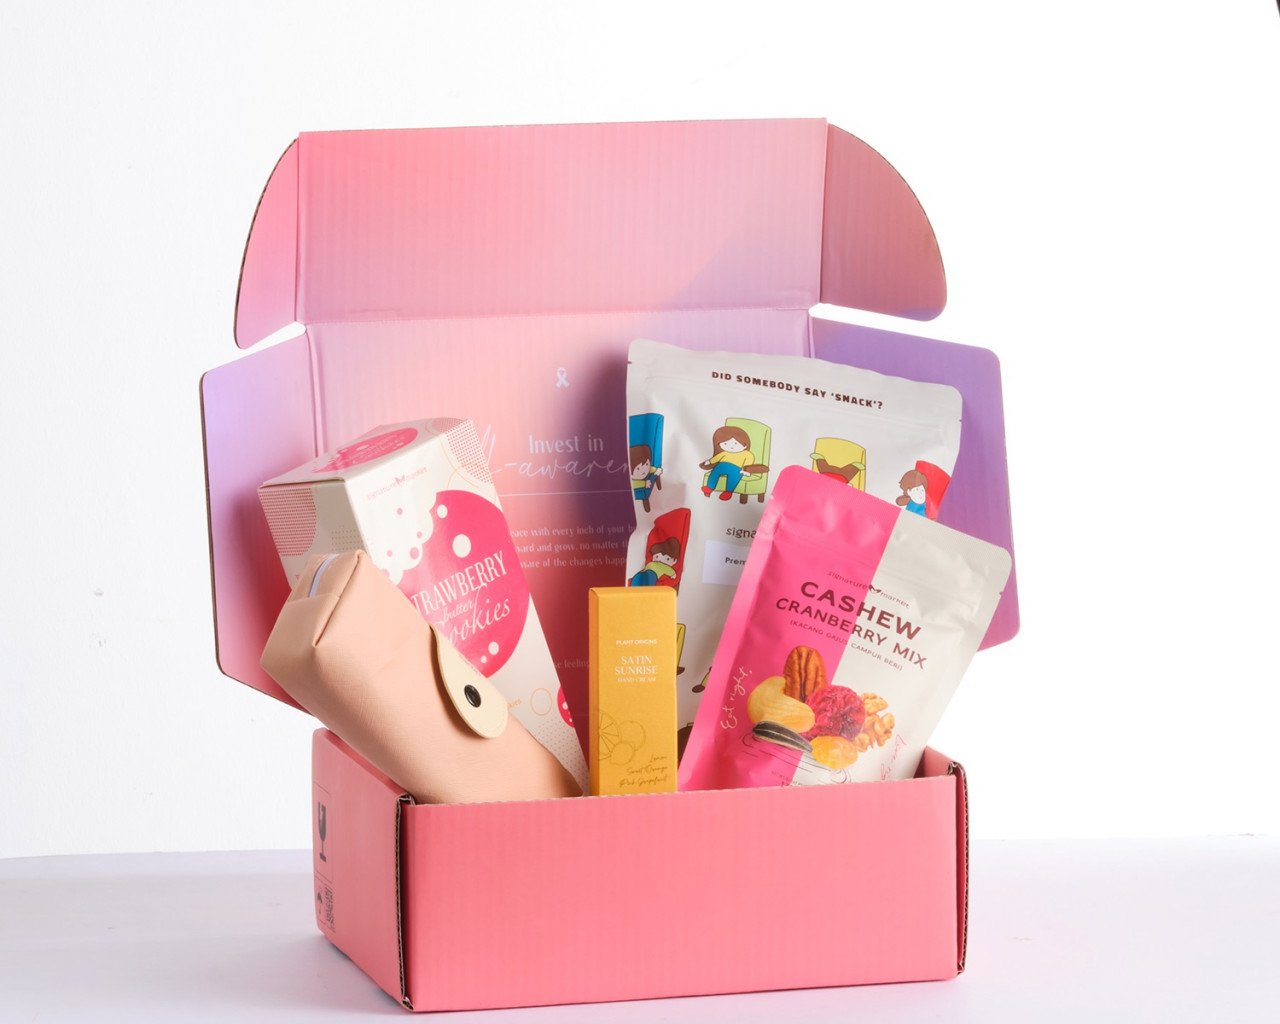 Kotak hadiah eksklusif Signature Market yang bertema 'Together In Pink' - Gambar ihsan Signature Market